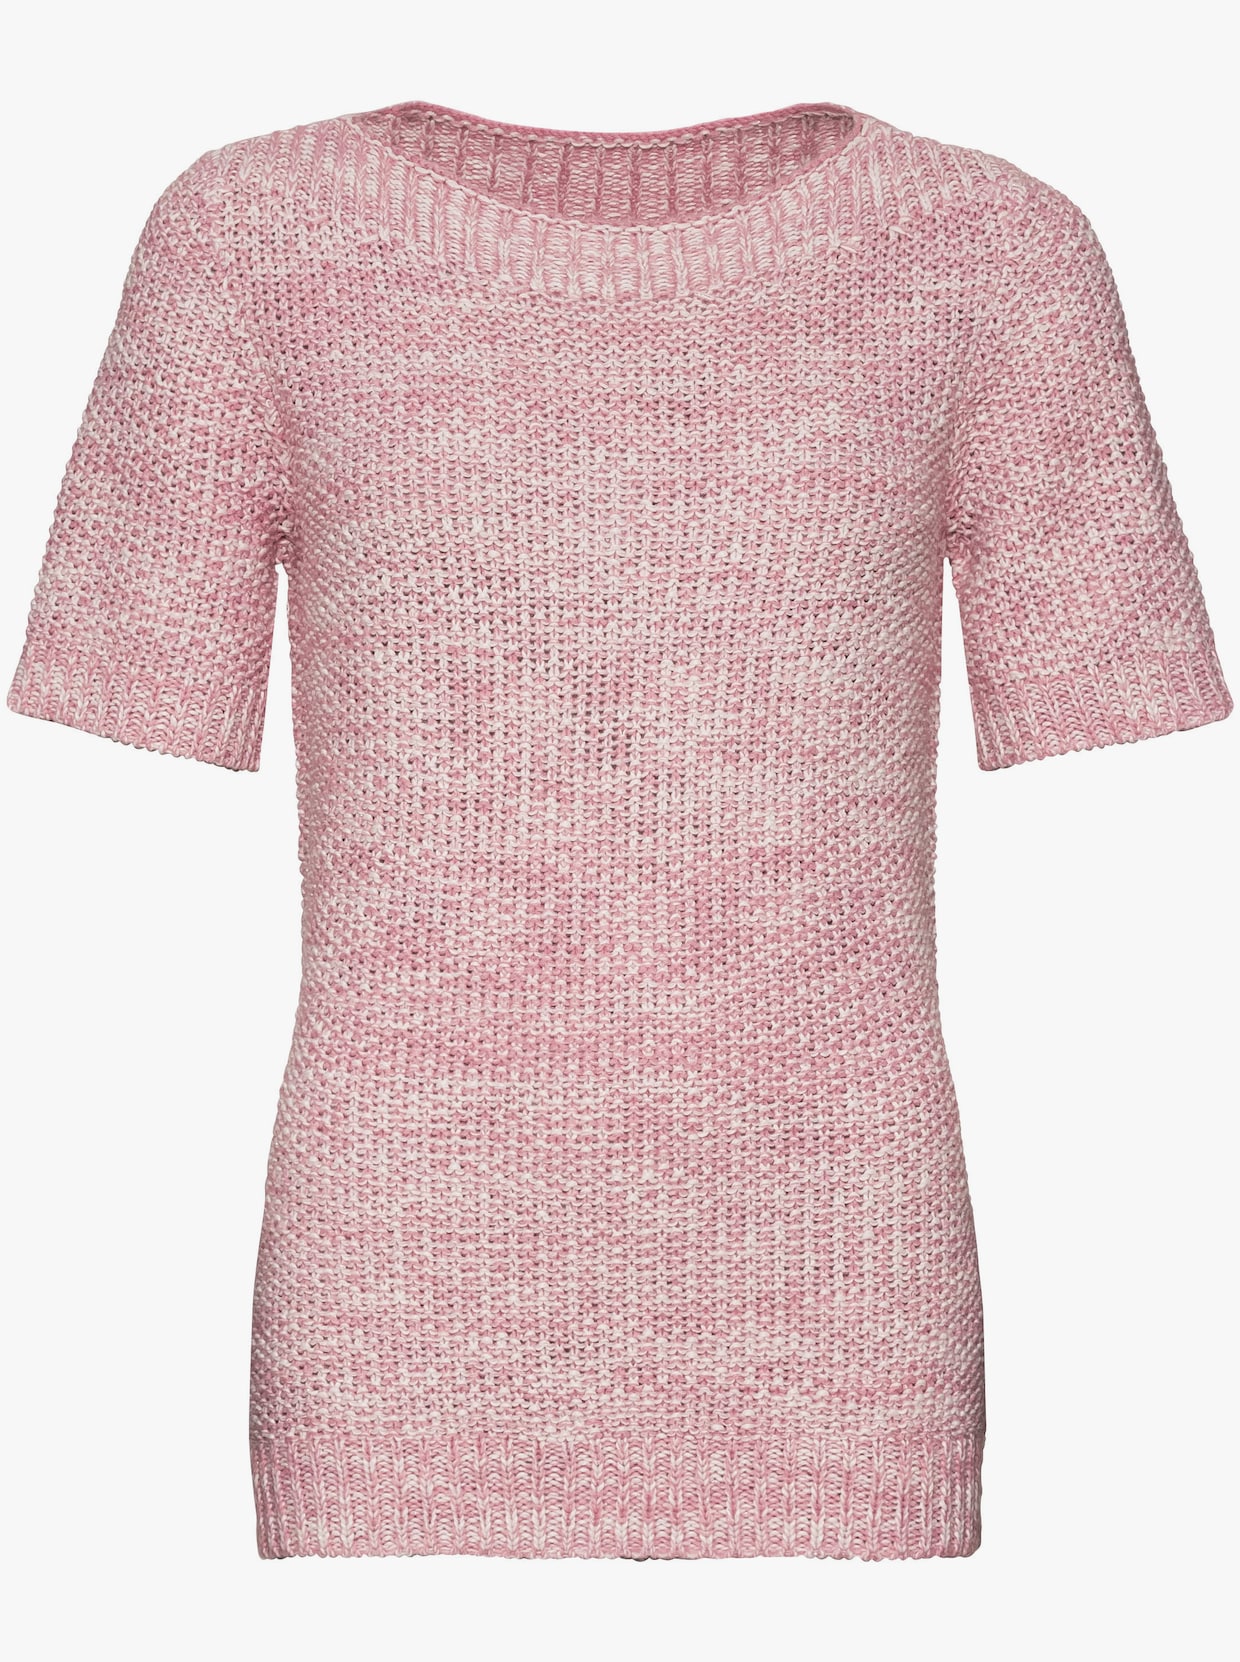 Pullover met korte mouwen - roze